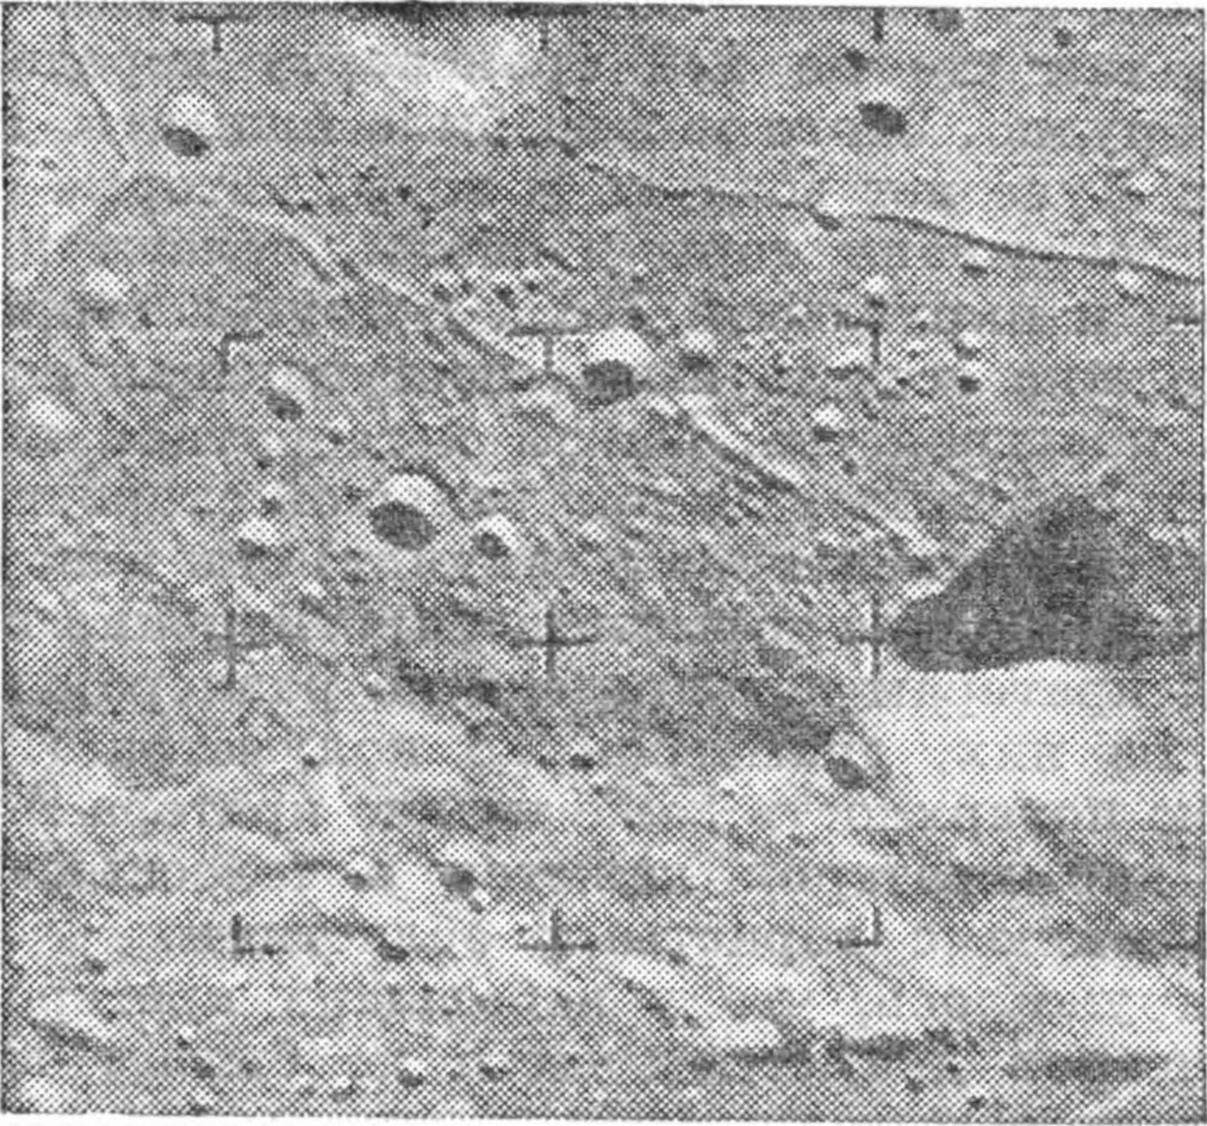 Рис. 38. Пик кратера Альфонс, отбрасывающий треугольную тень, и лунные трещины